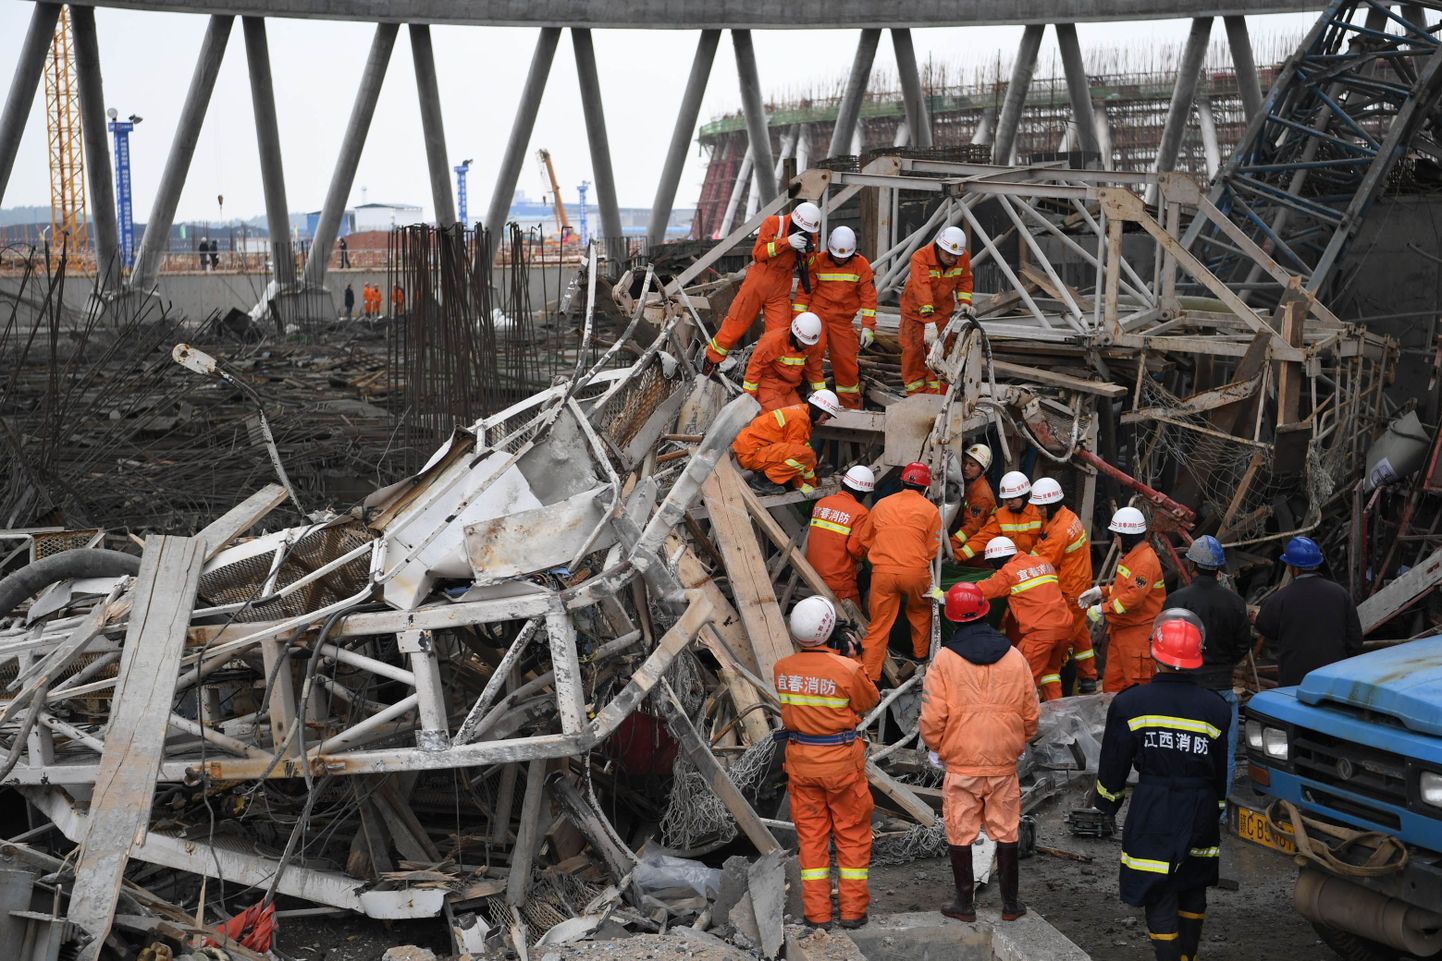 Hiina keskosas sai neljapäeval elektrijaama ehitusel aset leidnud varingus surma vähemalt 22 inimest.